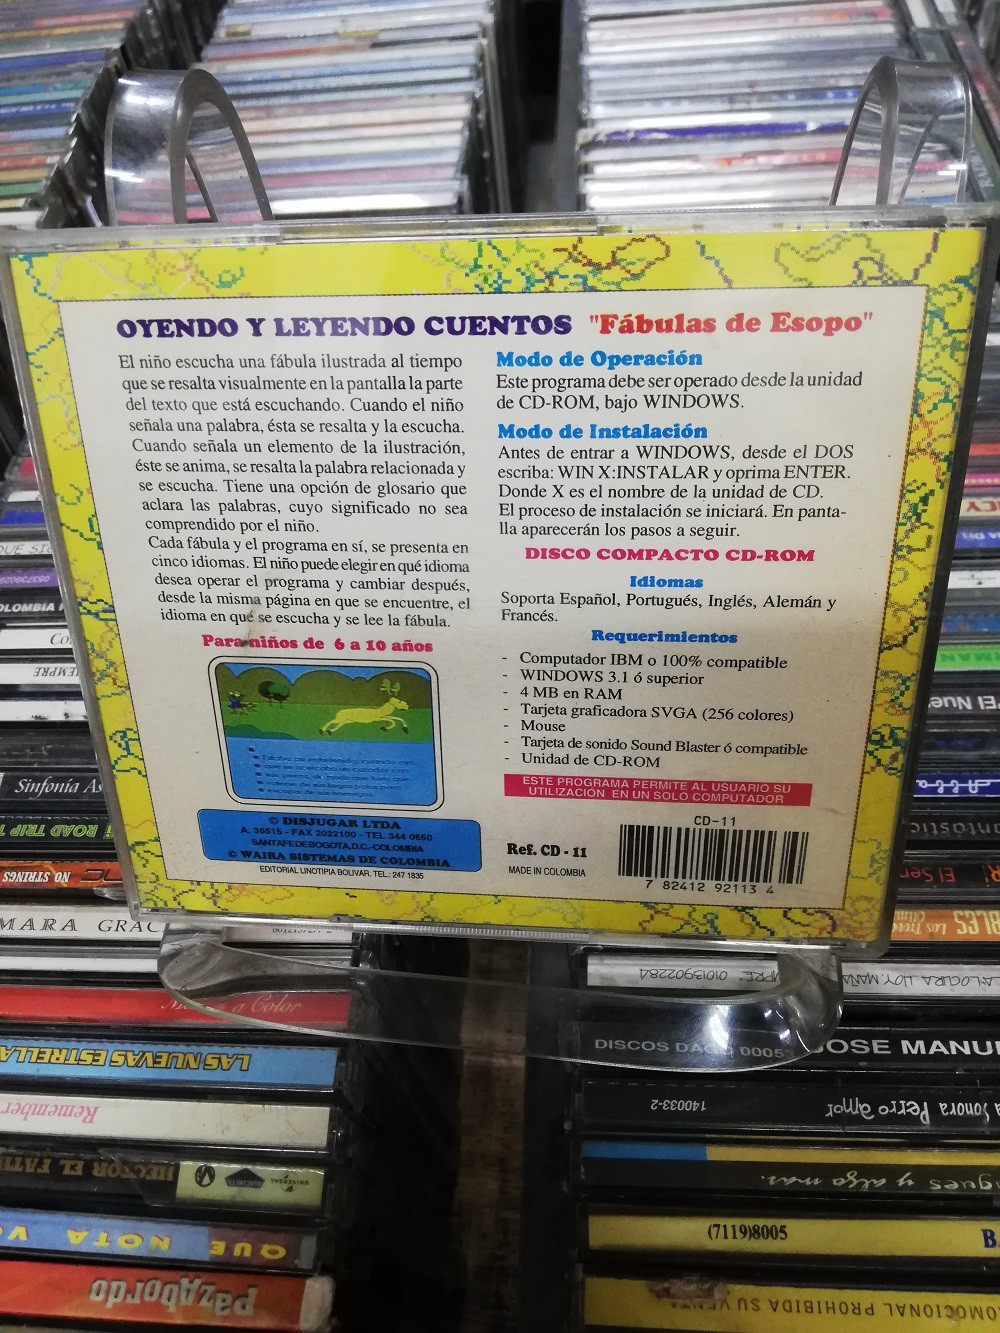 Imagen CD ROM FABULAS DE ESOPO - OYENDO Y LEYENDO CUENTOS 2